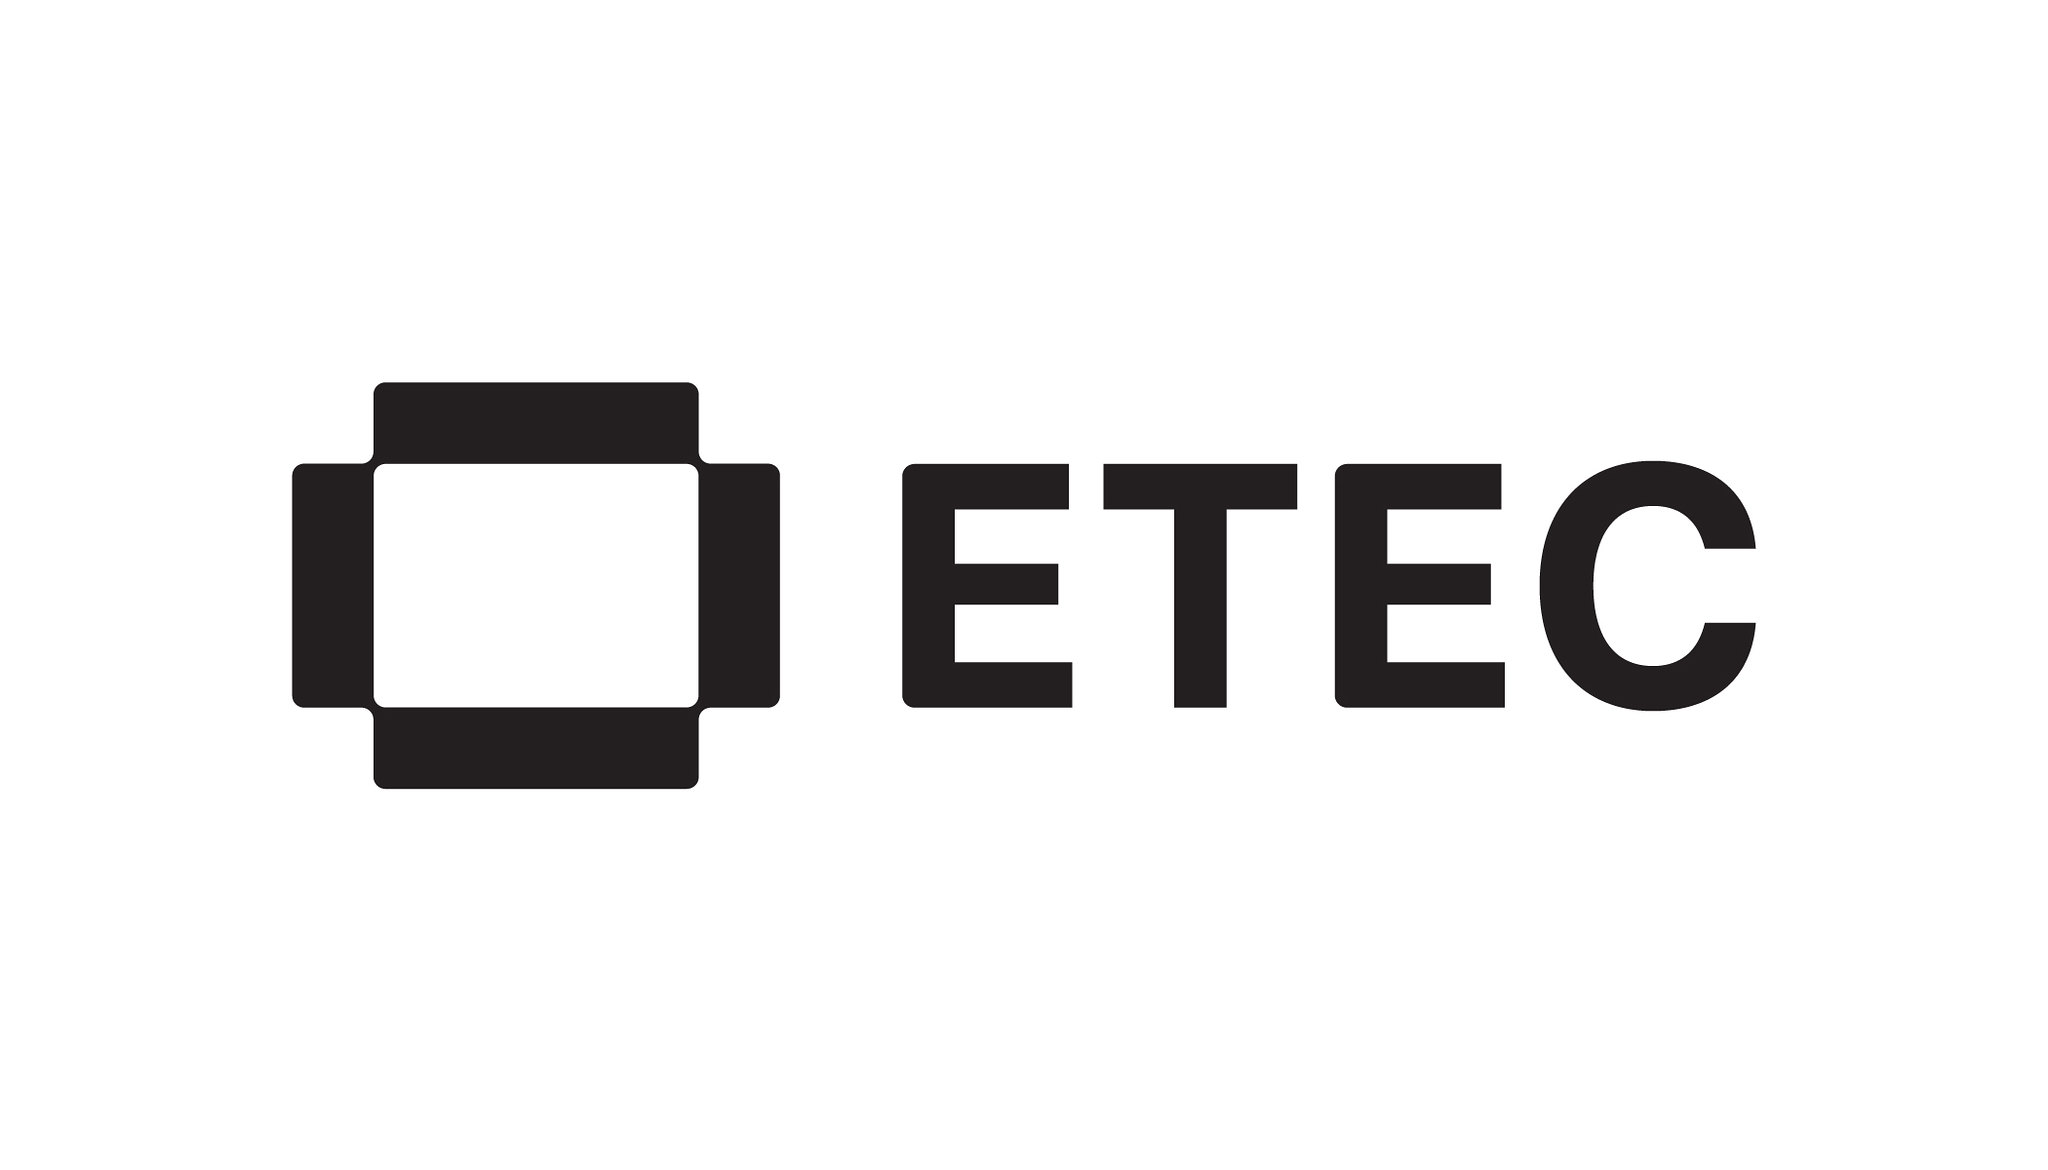 ETEC Logo